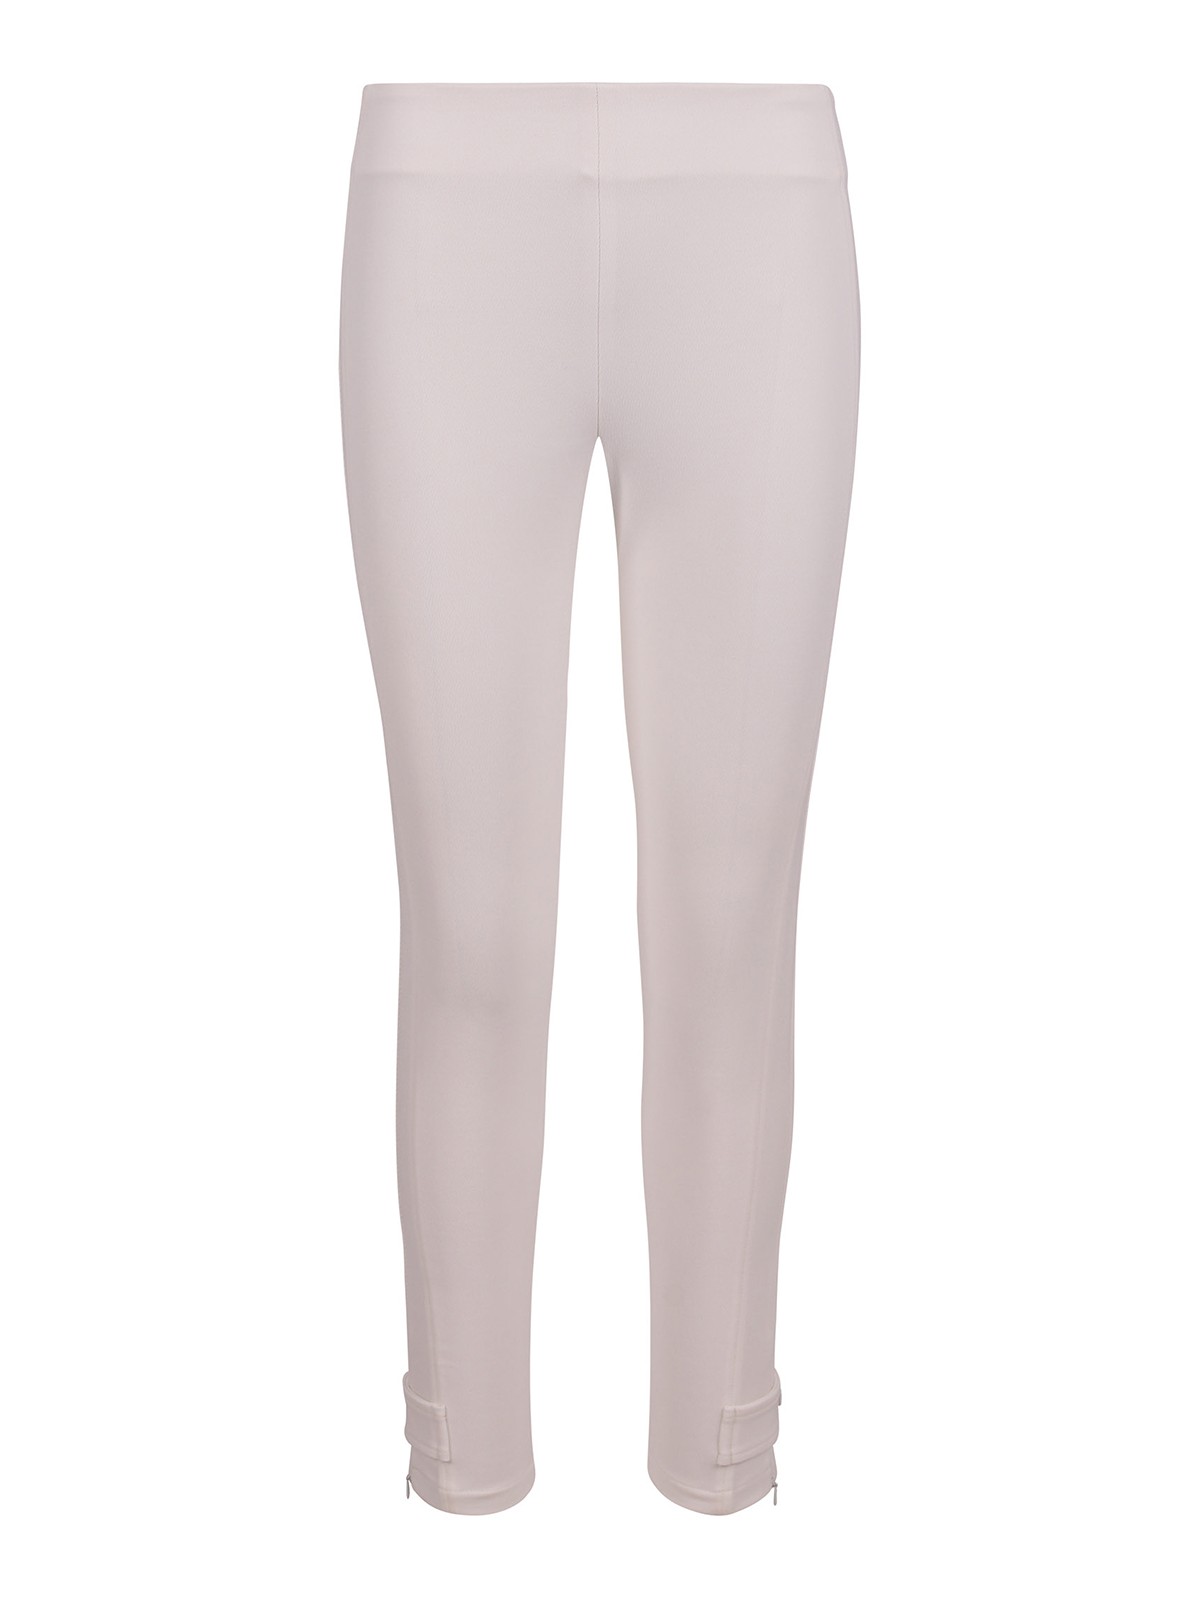 INCOTEX Mens Tight Fit Trousers Beige  ZR851Z4244W  Botta  B Online  Store